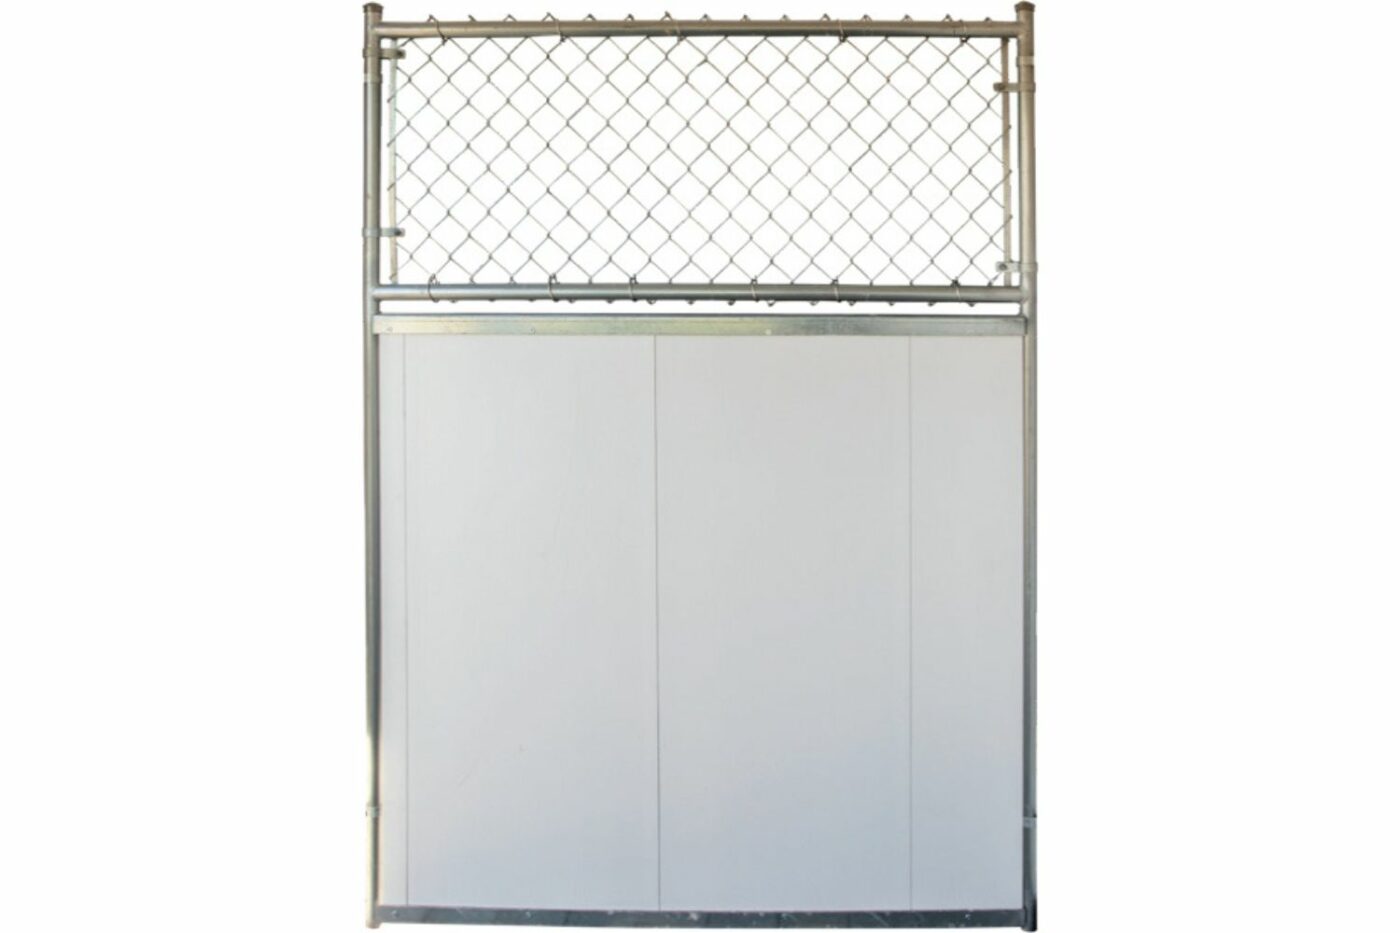 kennel divider- dog kennel fencing and flooring